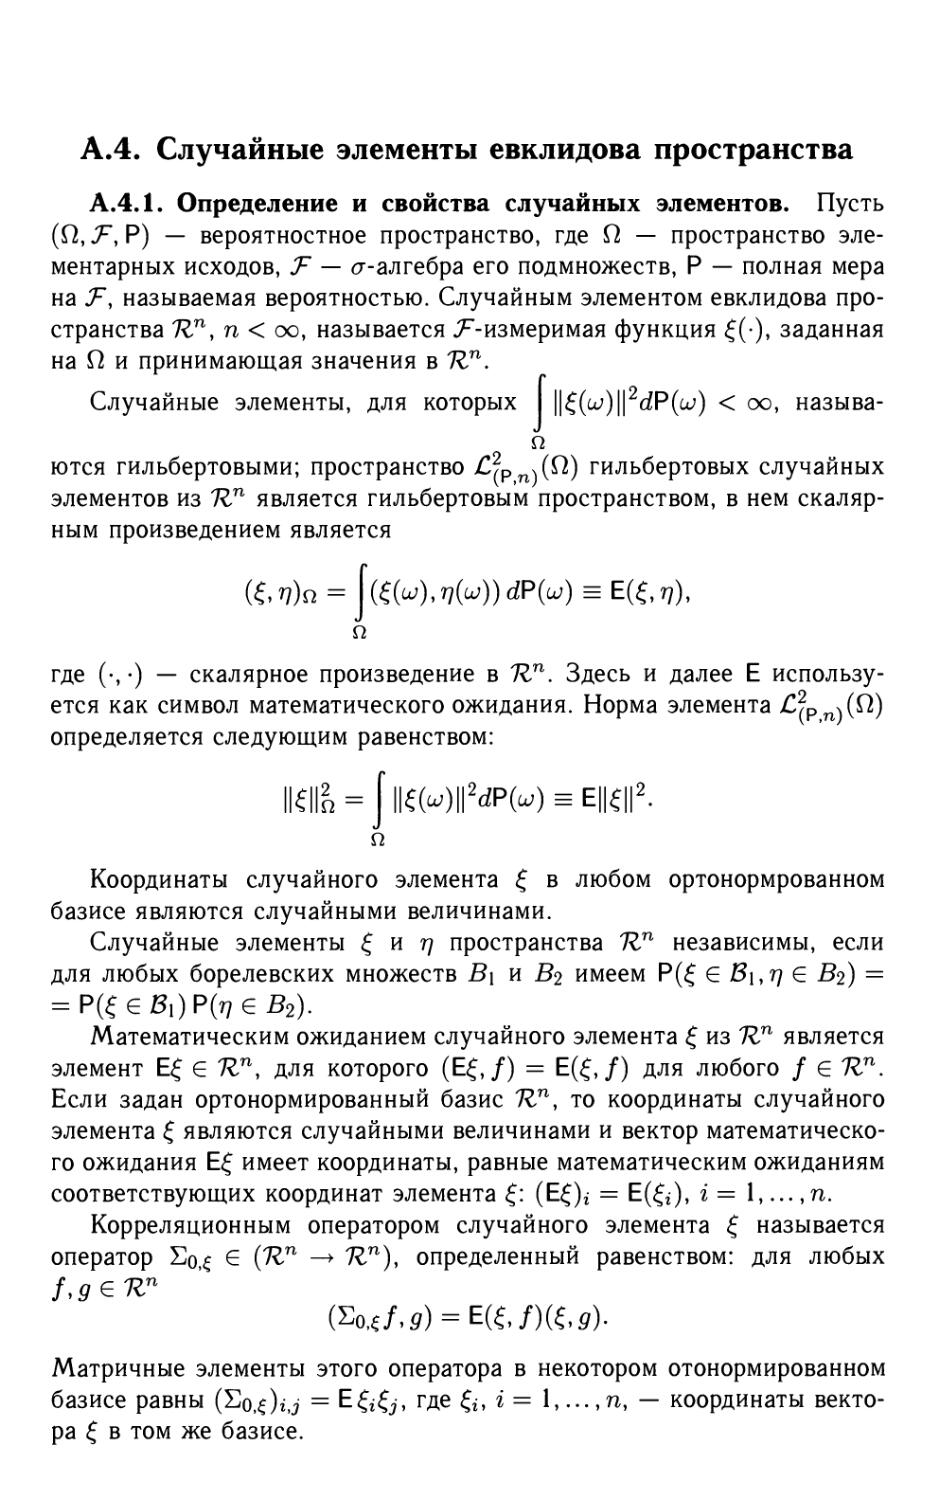 А.4. Случайные элементы евклидова пространства